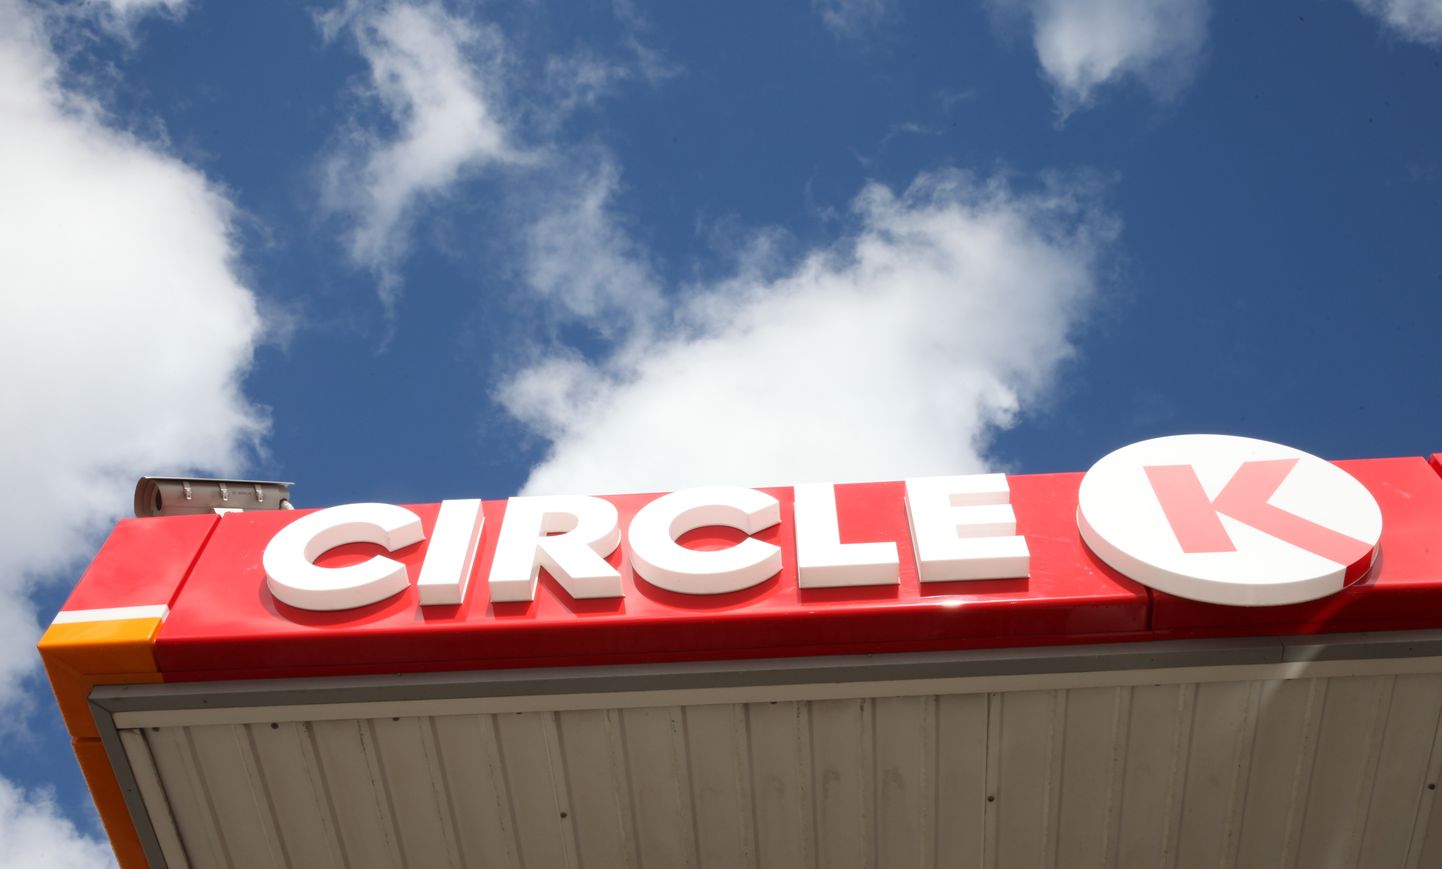 Ulmaņa gatvē atklāta pirmā "Circle K" degvielas uzpildes stacija.